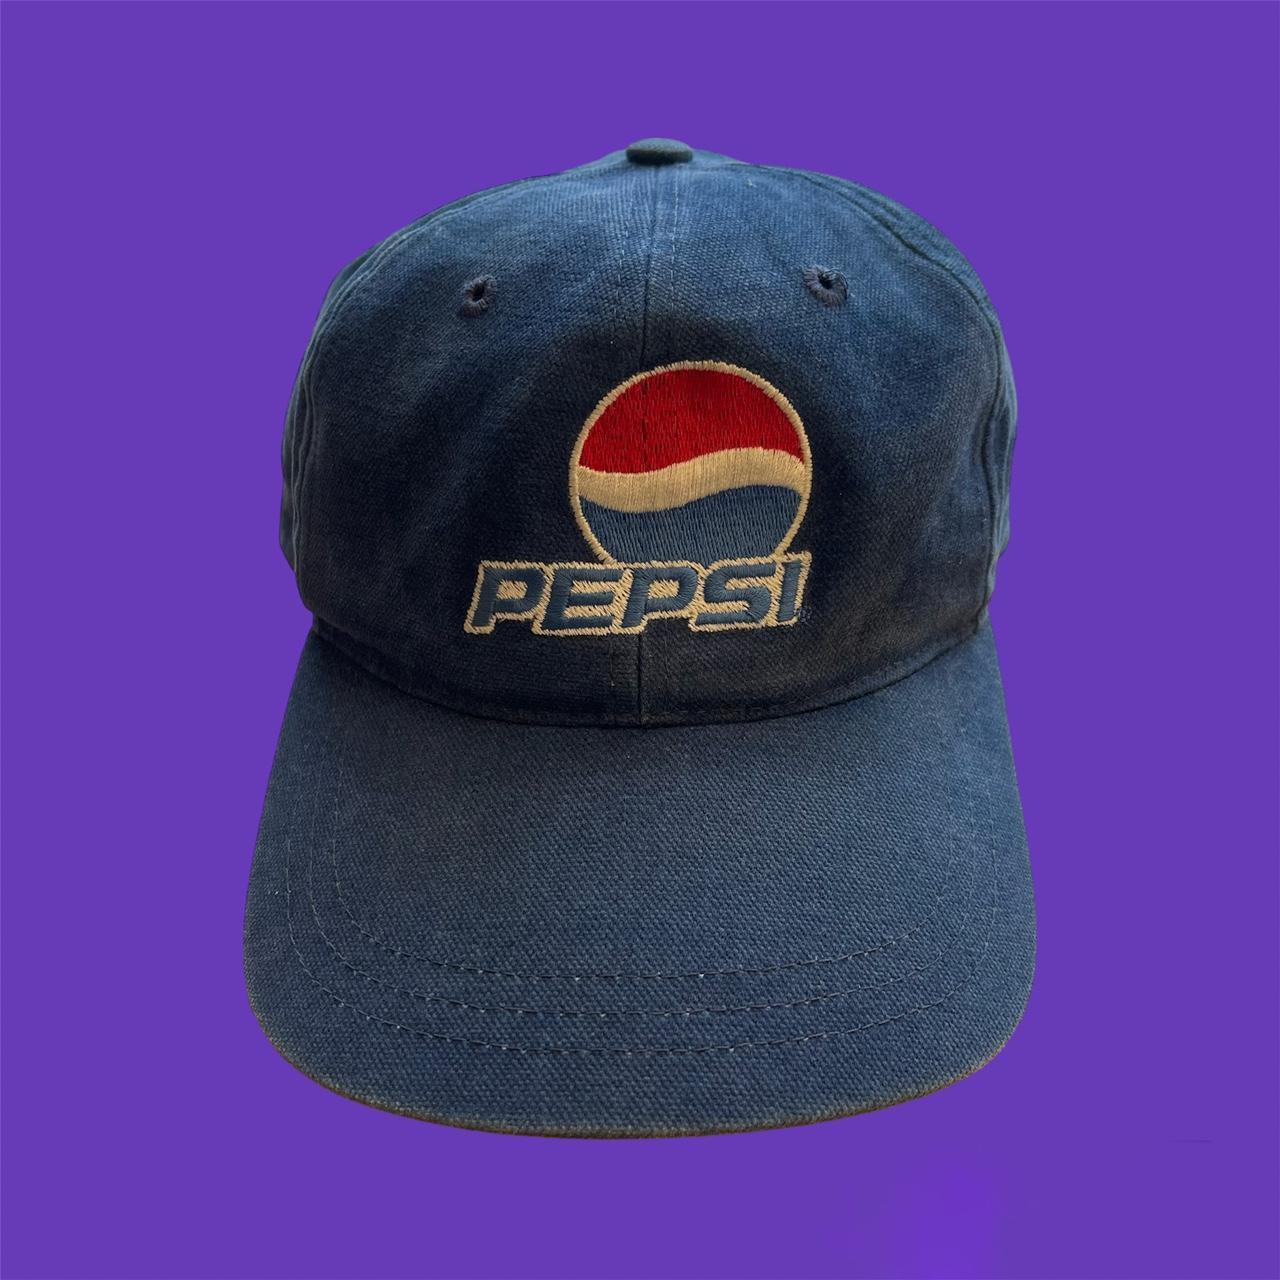 Vintage Pepsi hat • Good preloved condition •... - Depop